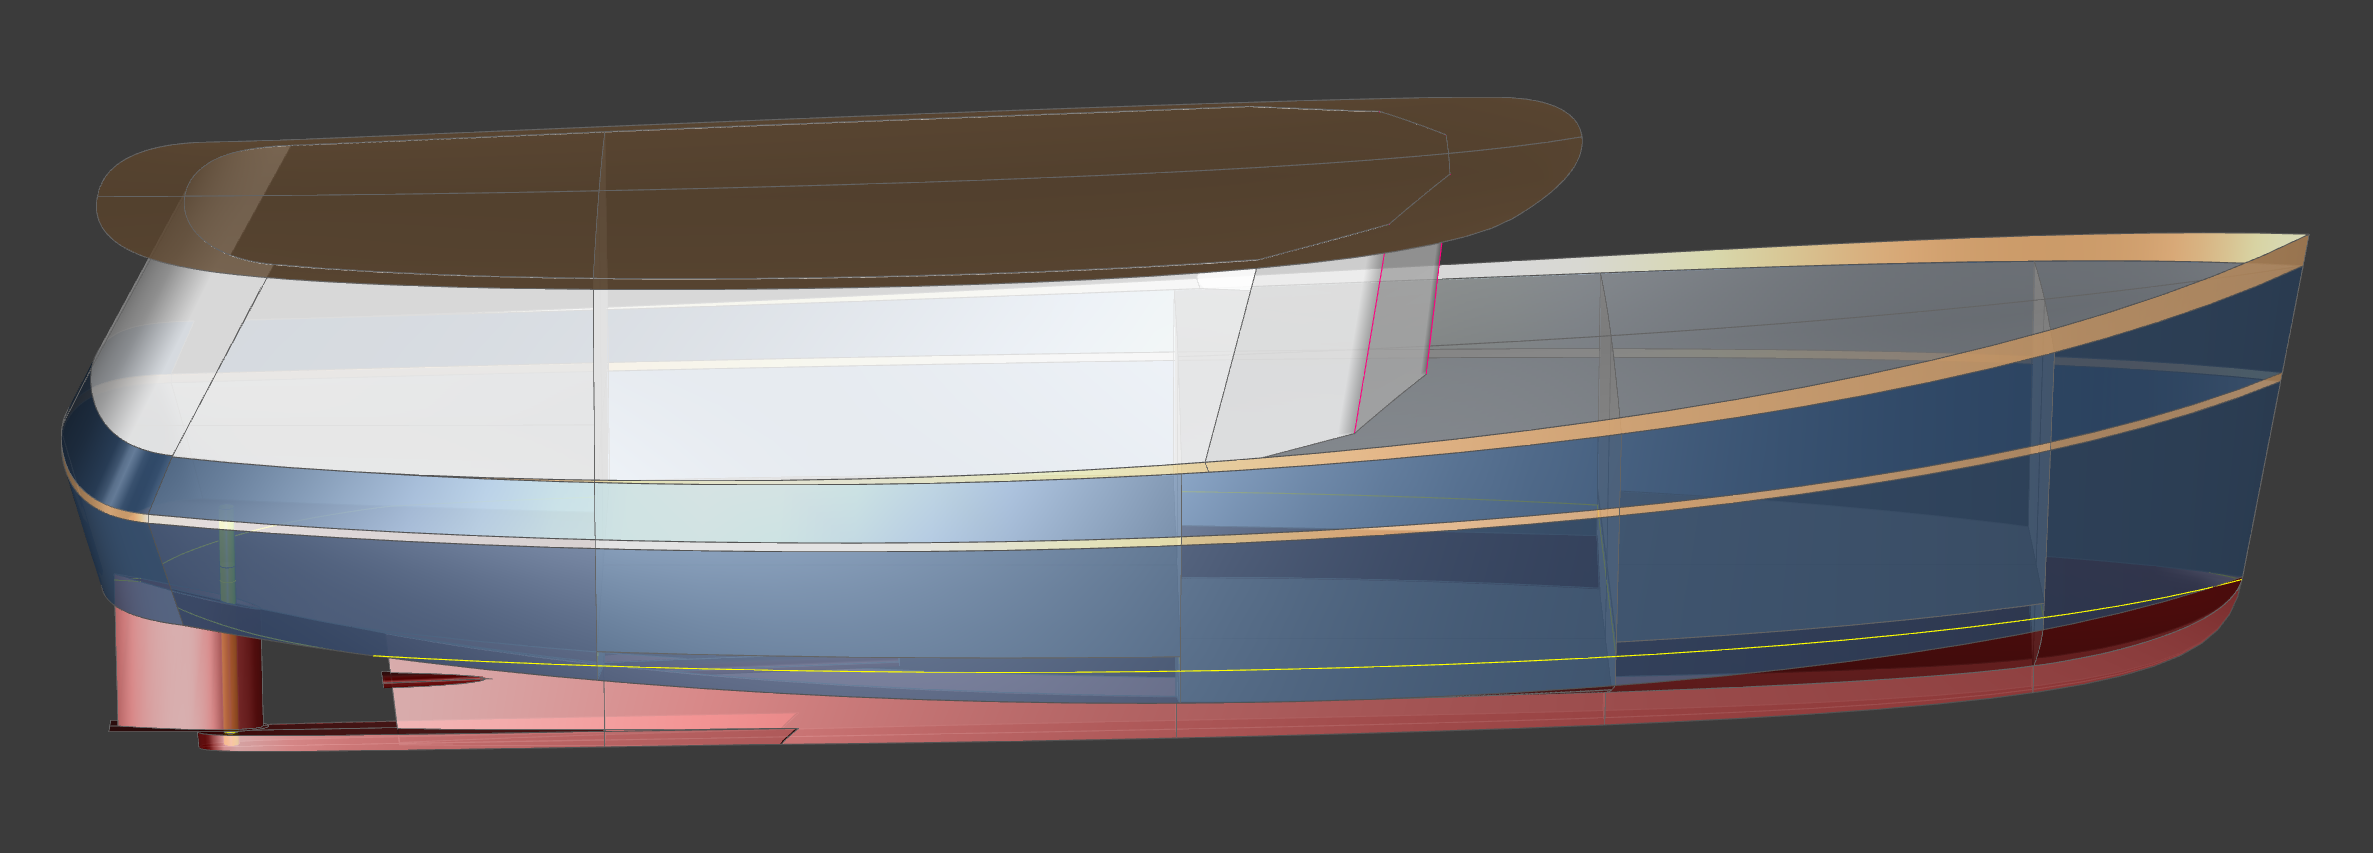 35' Big Ferdinand Trawler Yacht - Kasten Marine Design, Inc.s